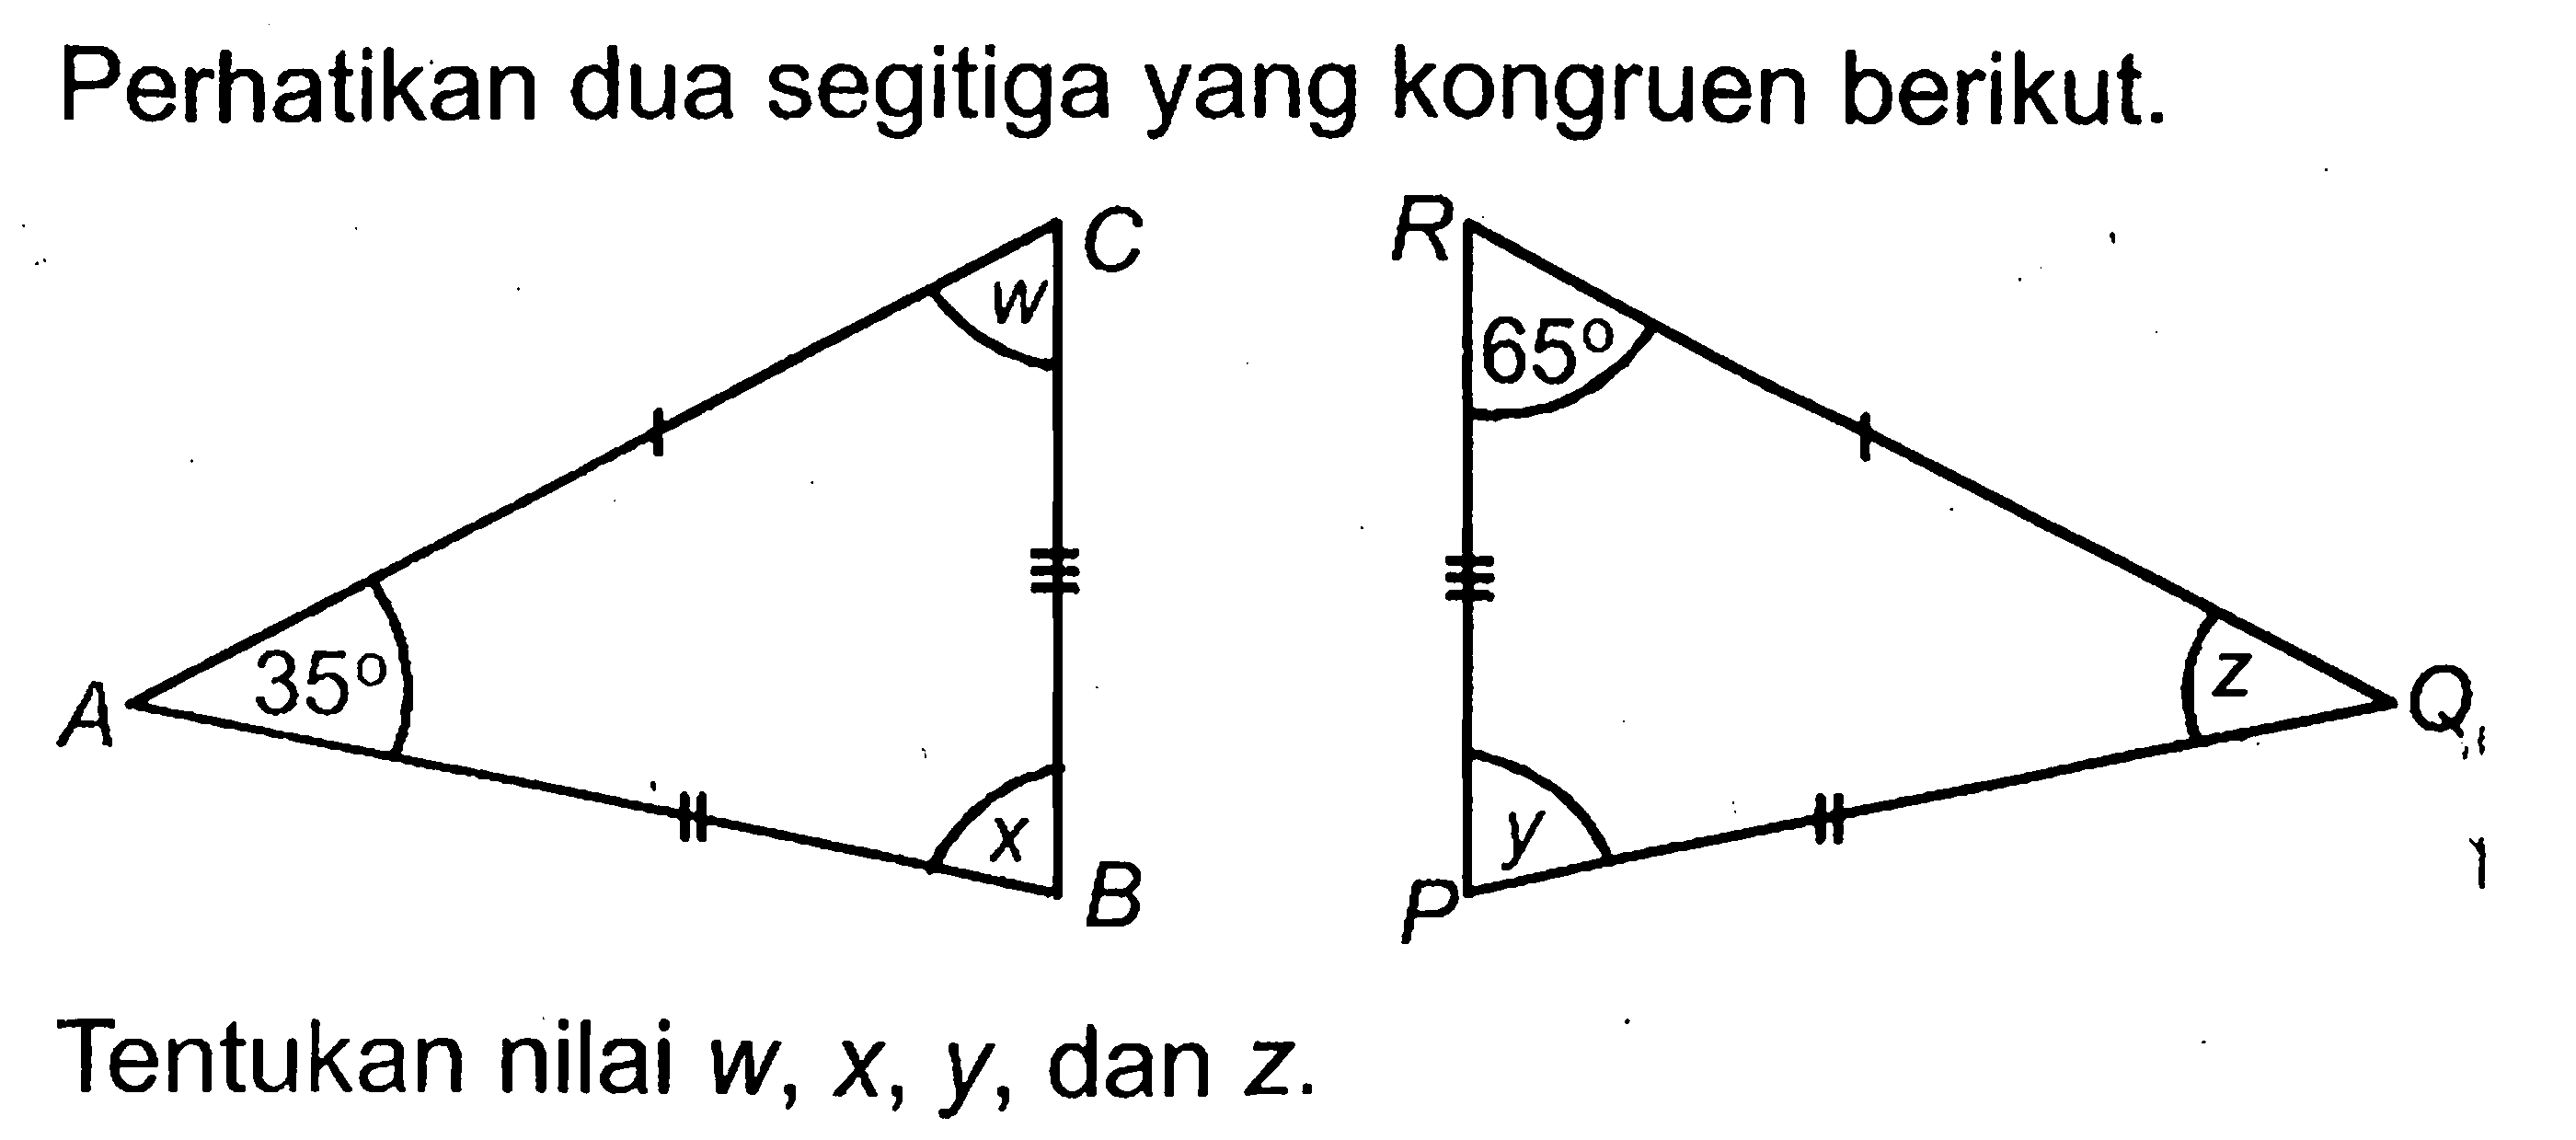 Perhatikan dua segitiga yang kongruen berikut. C w A 35 x B R 65 z Q P y. Tentukan nilai  w, x, y , dan  z .